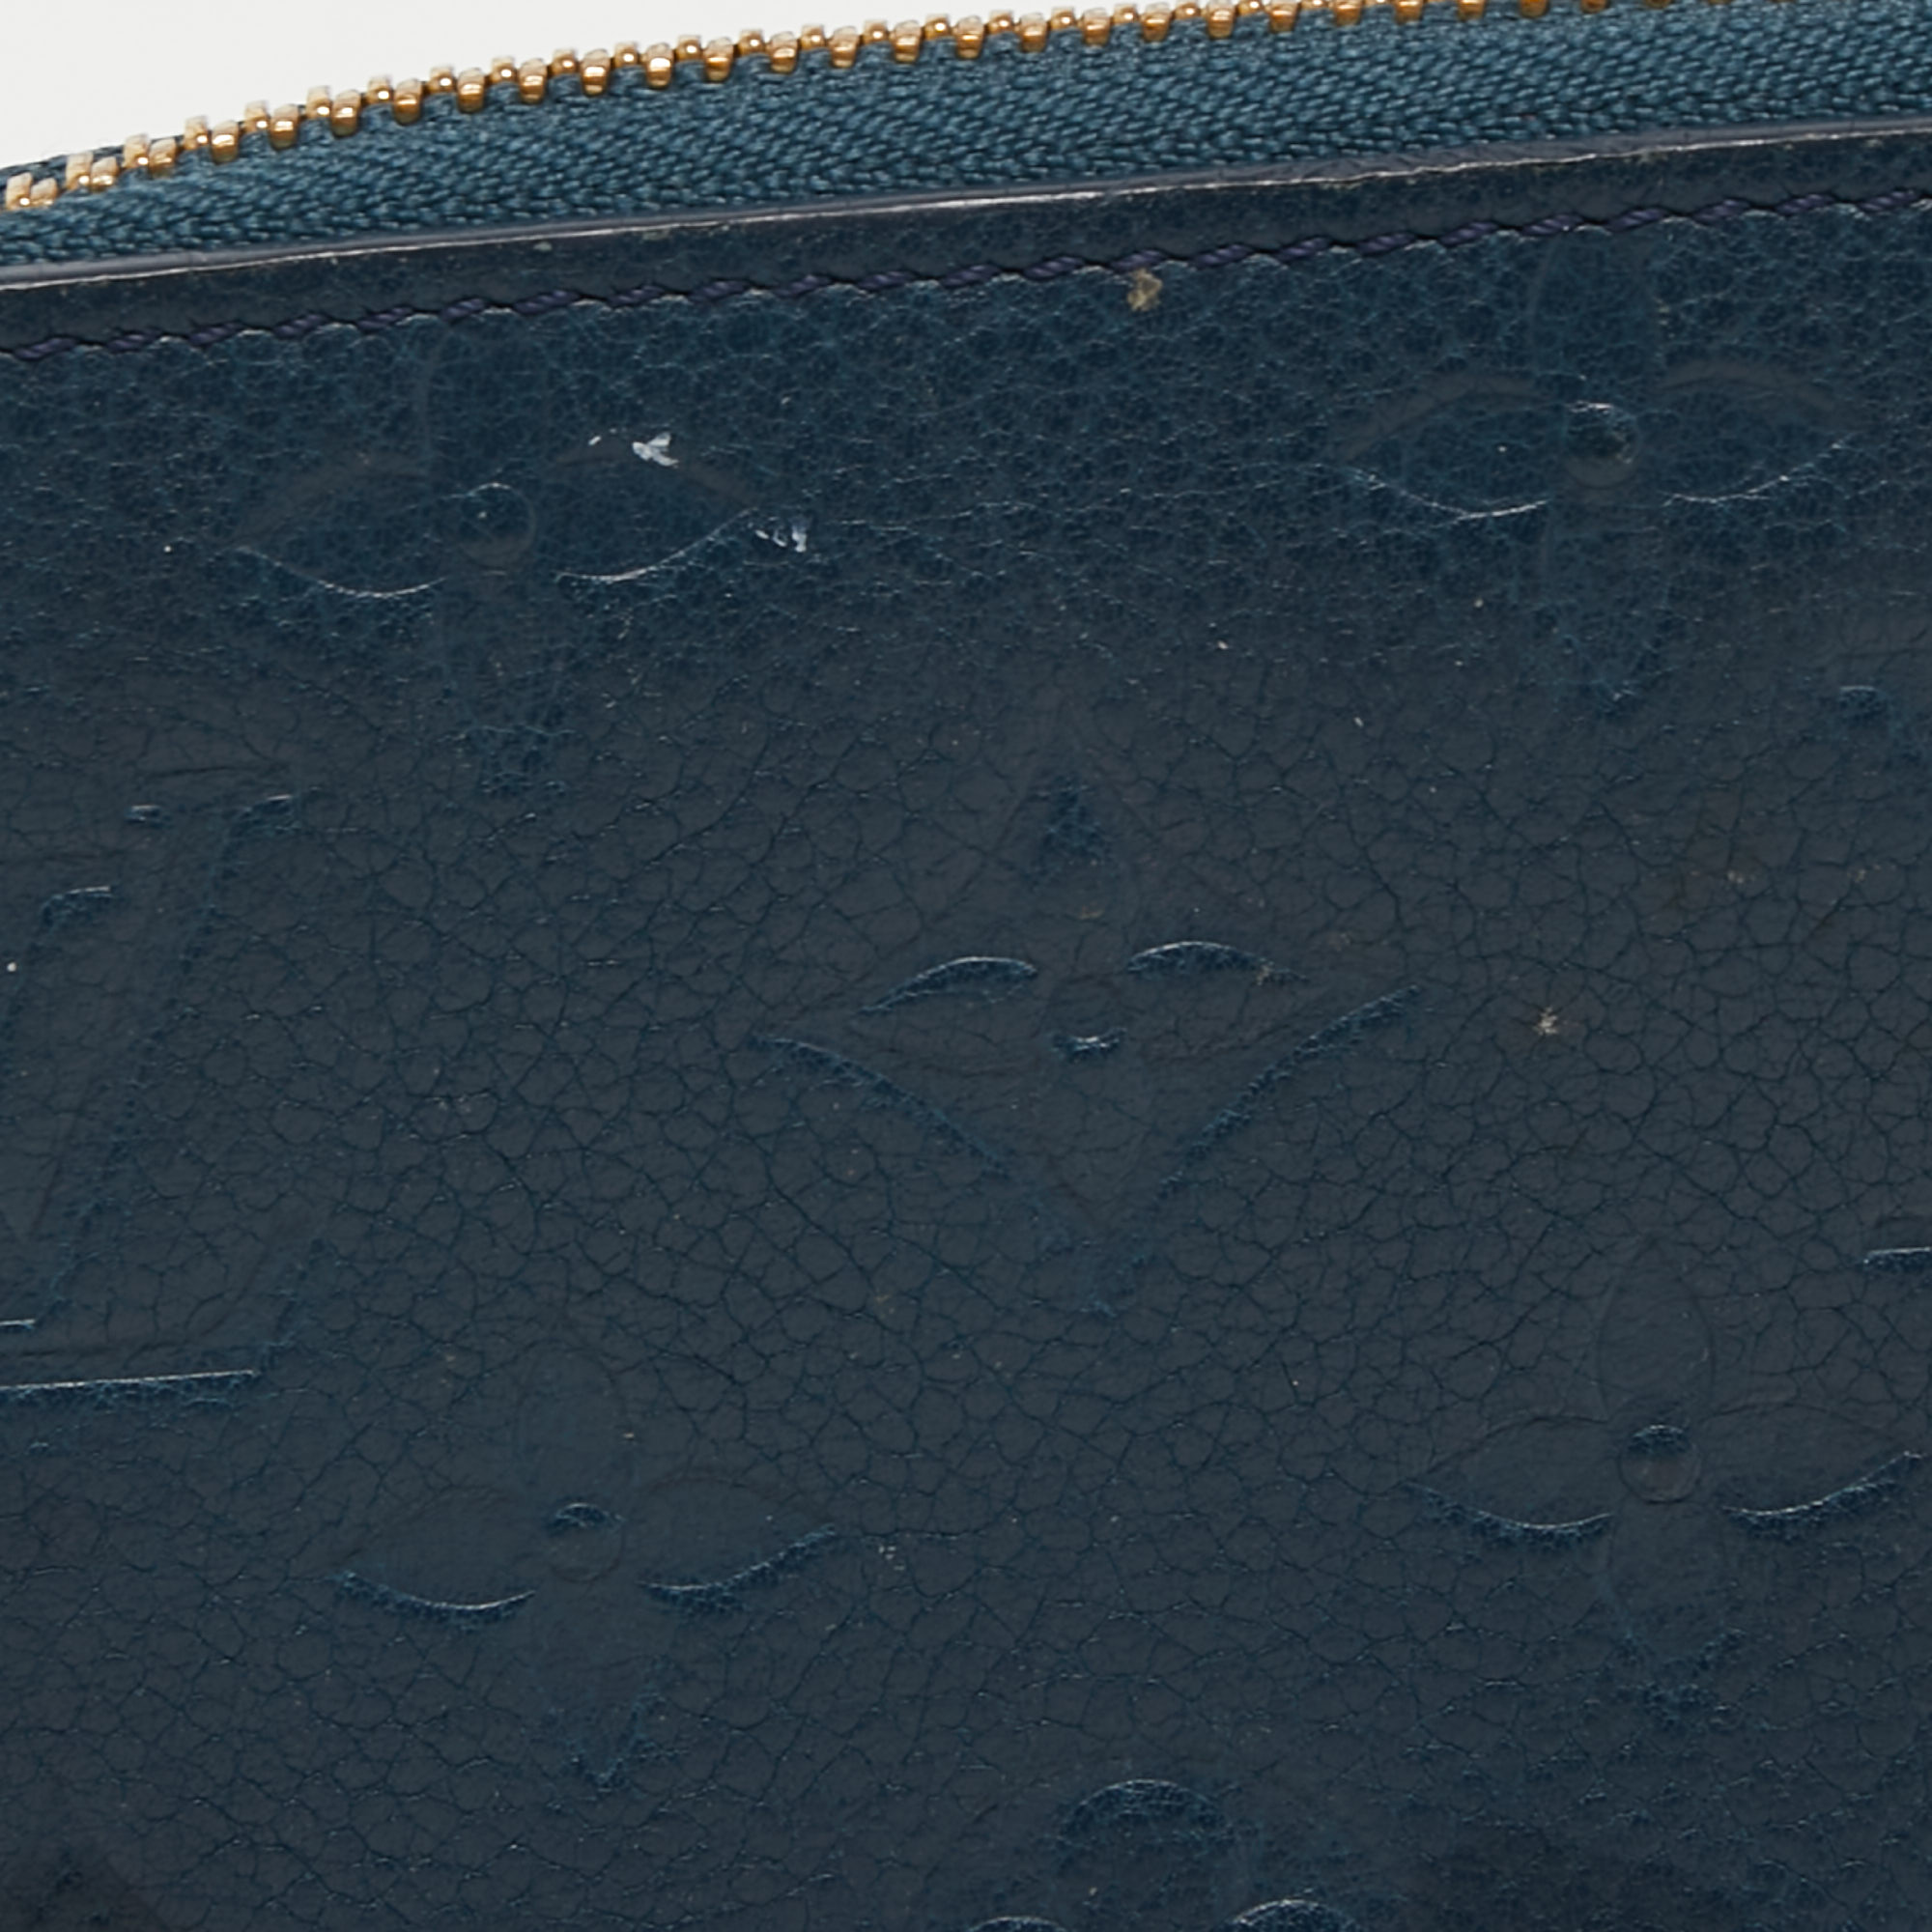 Louis Vuitton Orage Monogram Empreinte Leather Zippy Wallet